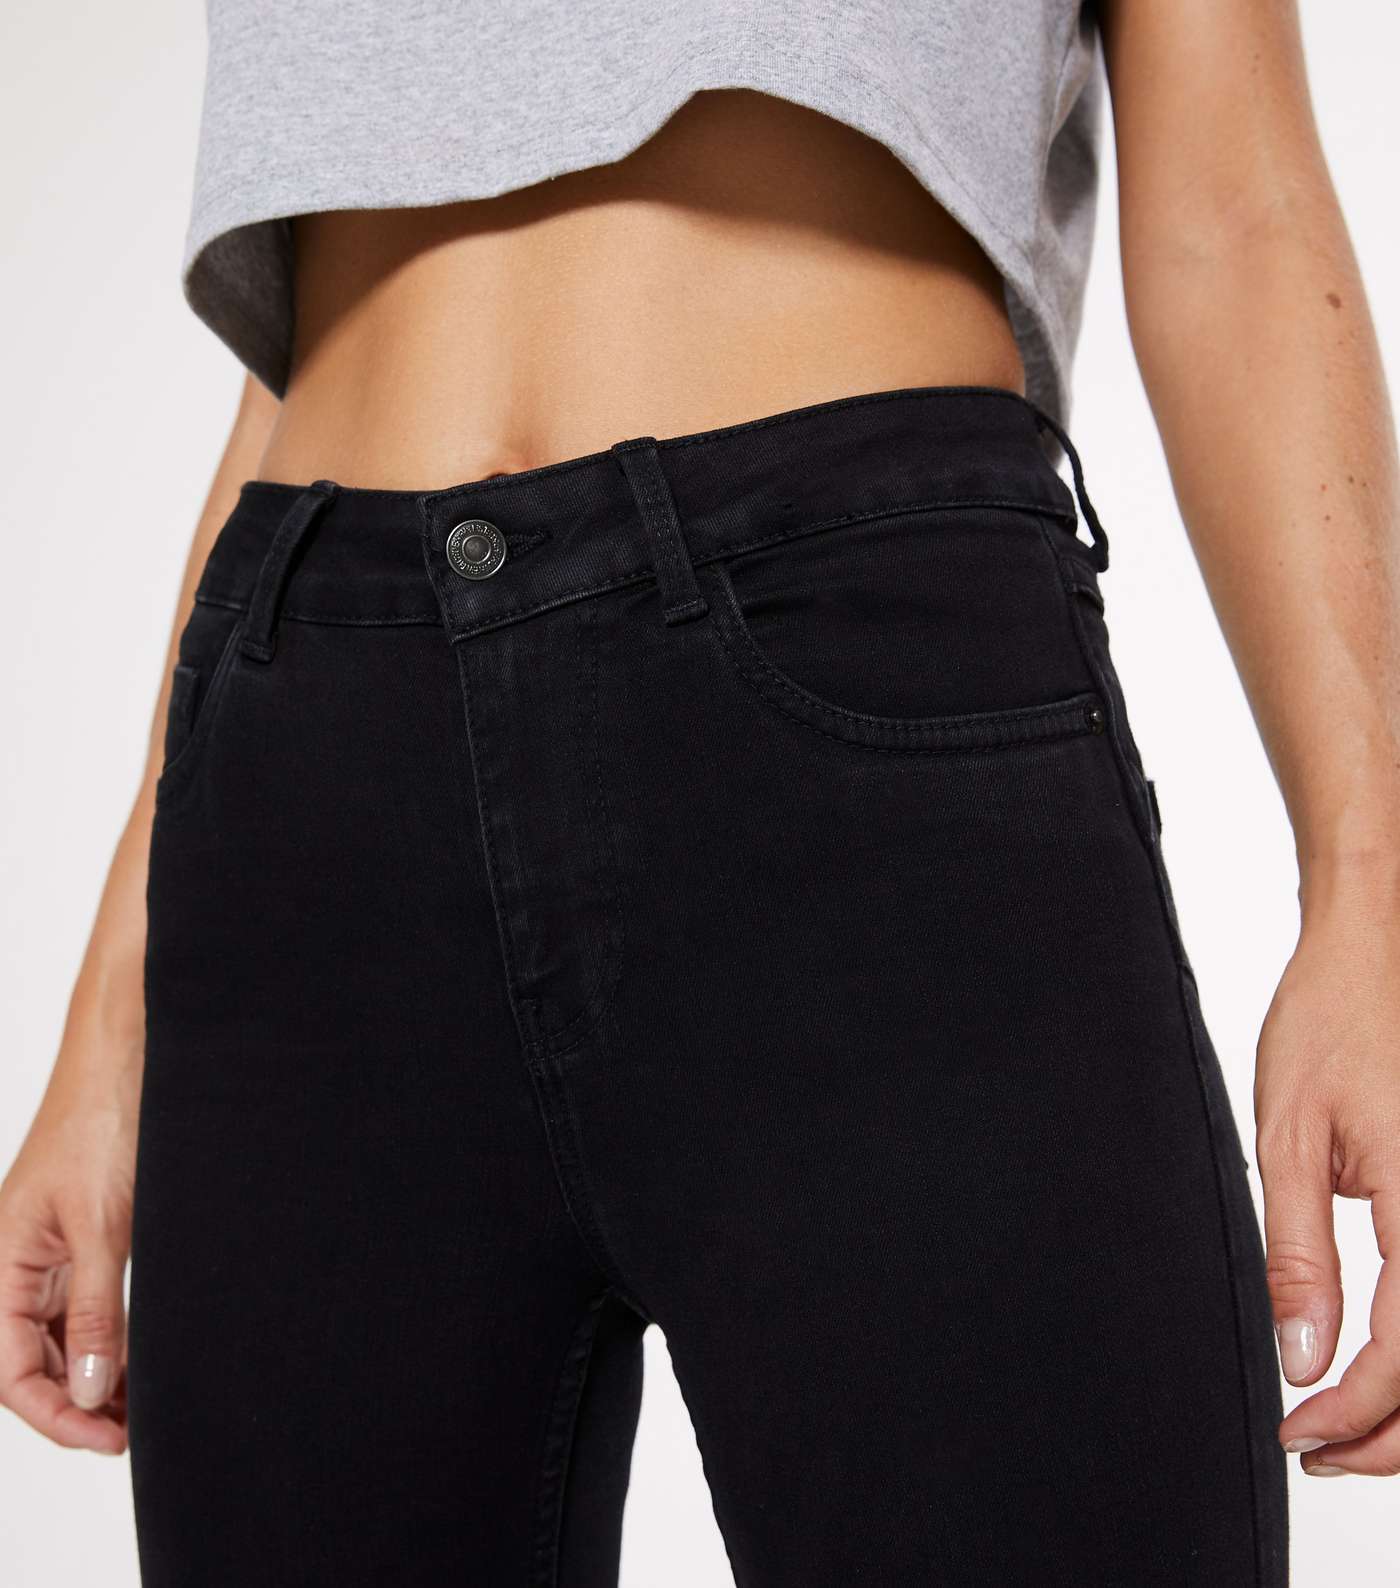 Petite Short Leg Black 'Lift & Shape' Jenna Skinny Jeans Image 3